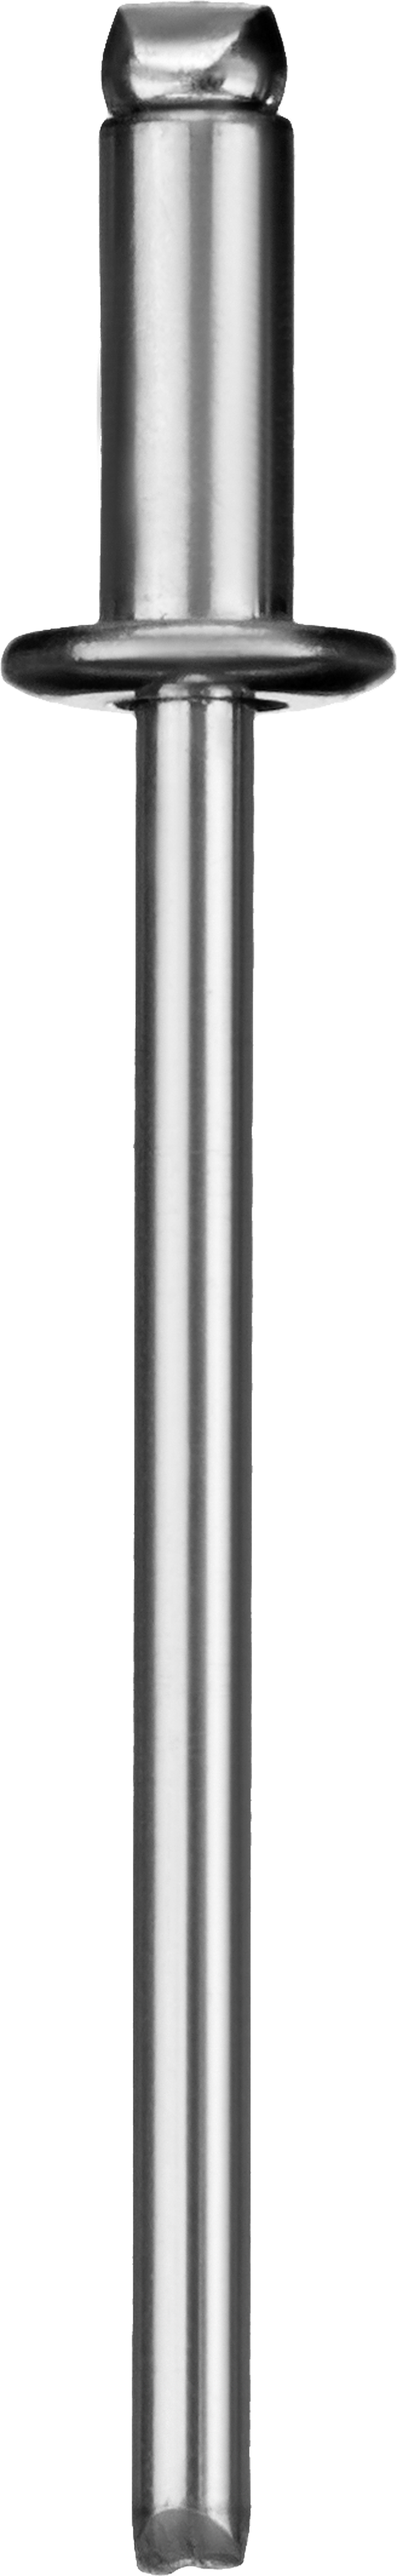 Заклепки вытяжные Зубр Профессионал, ⌀ 3.2 мм длина гильзы 6 мм, алюминий, 50 шт. (313106-32-06)